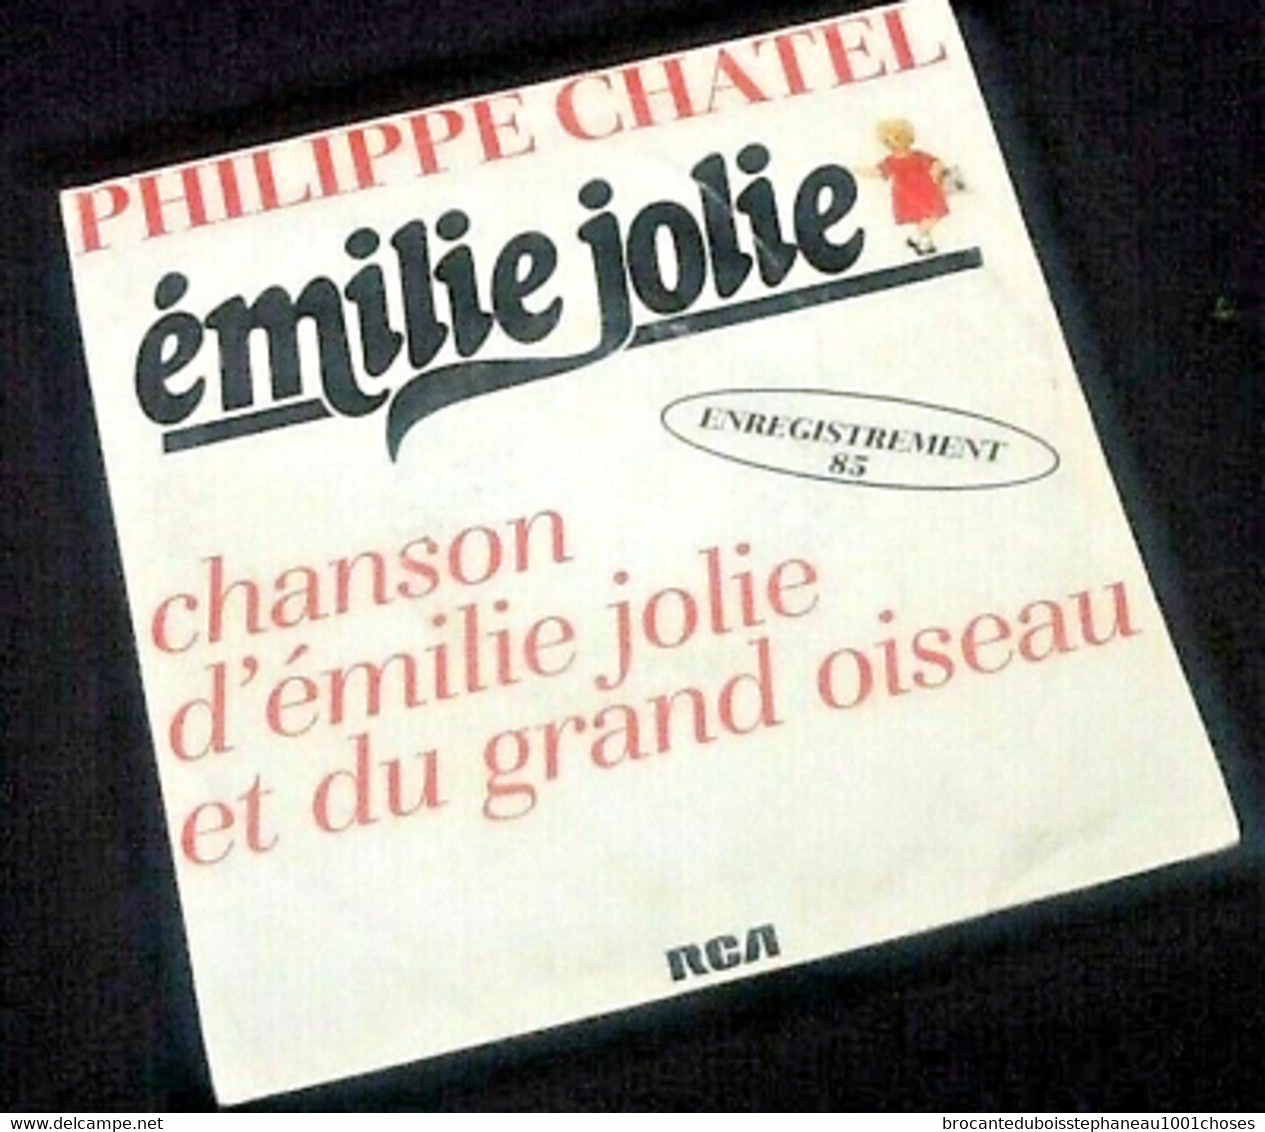 Vinyle 45 Tours Philippe Chatel émilie Jolie  (1985) - Autres - Musique Française